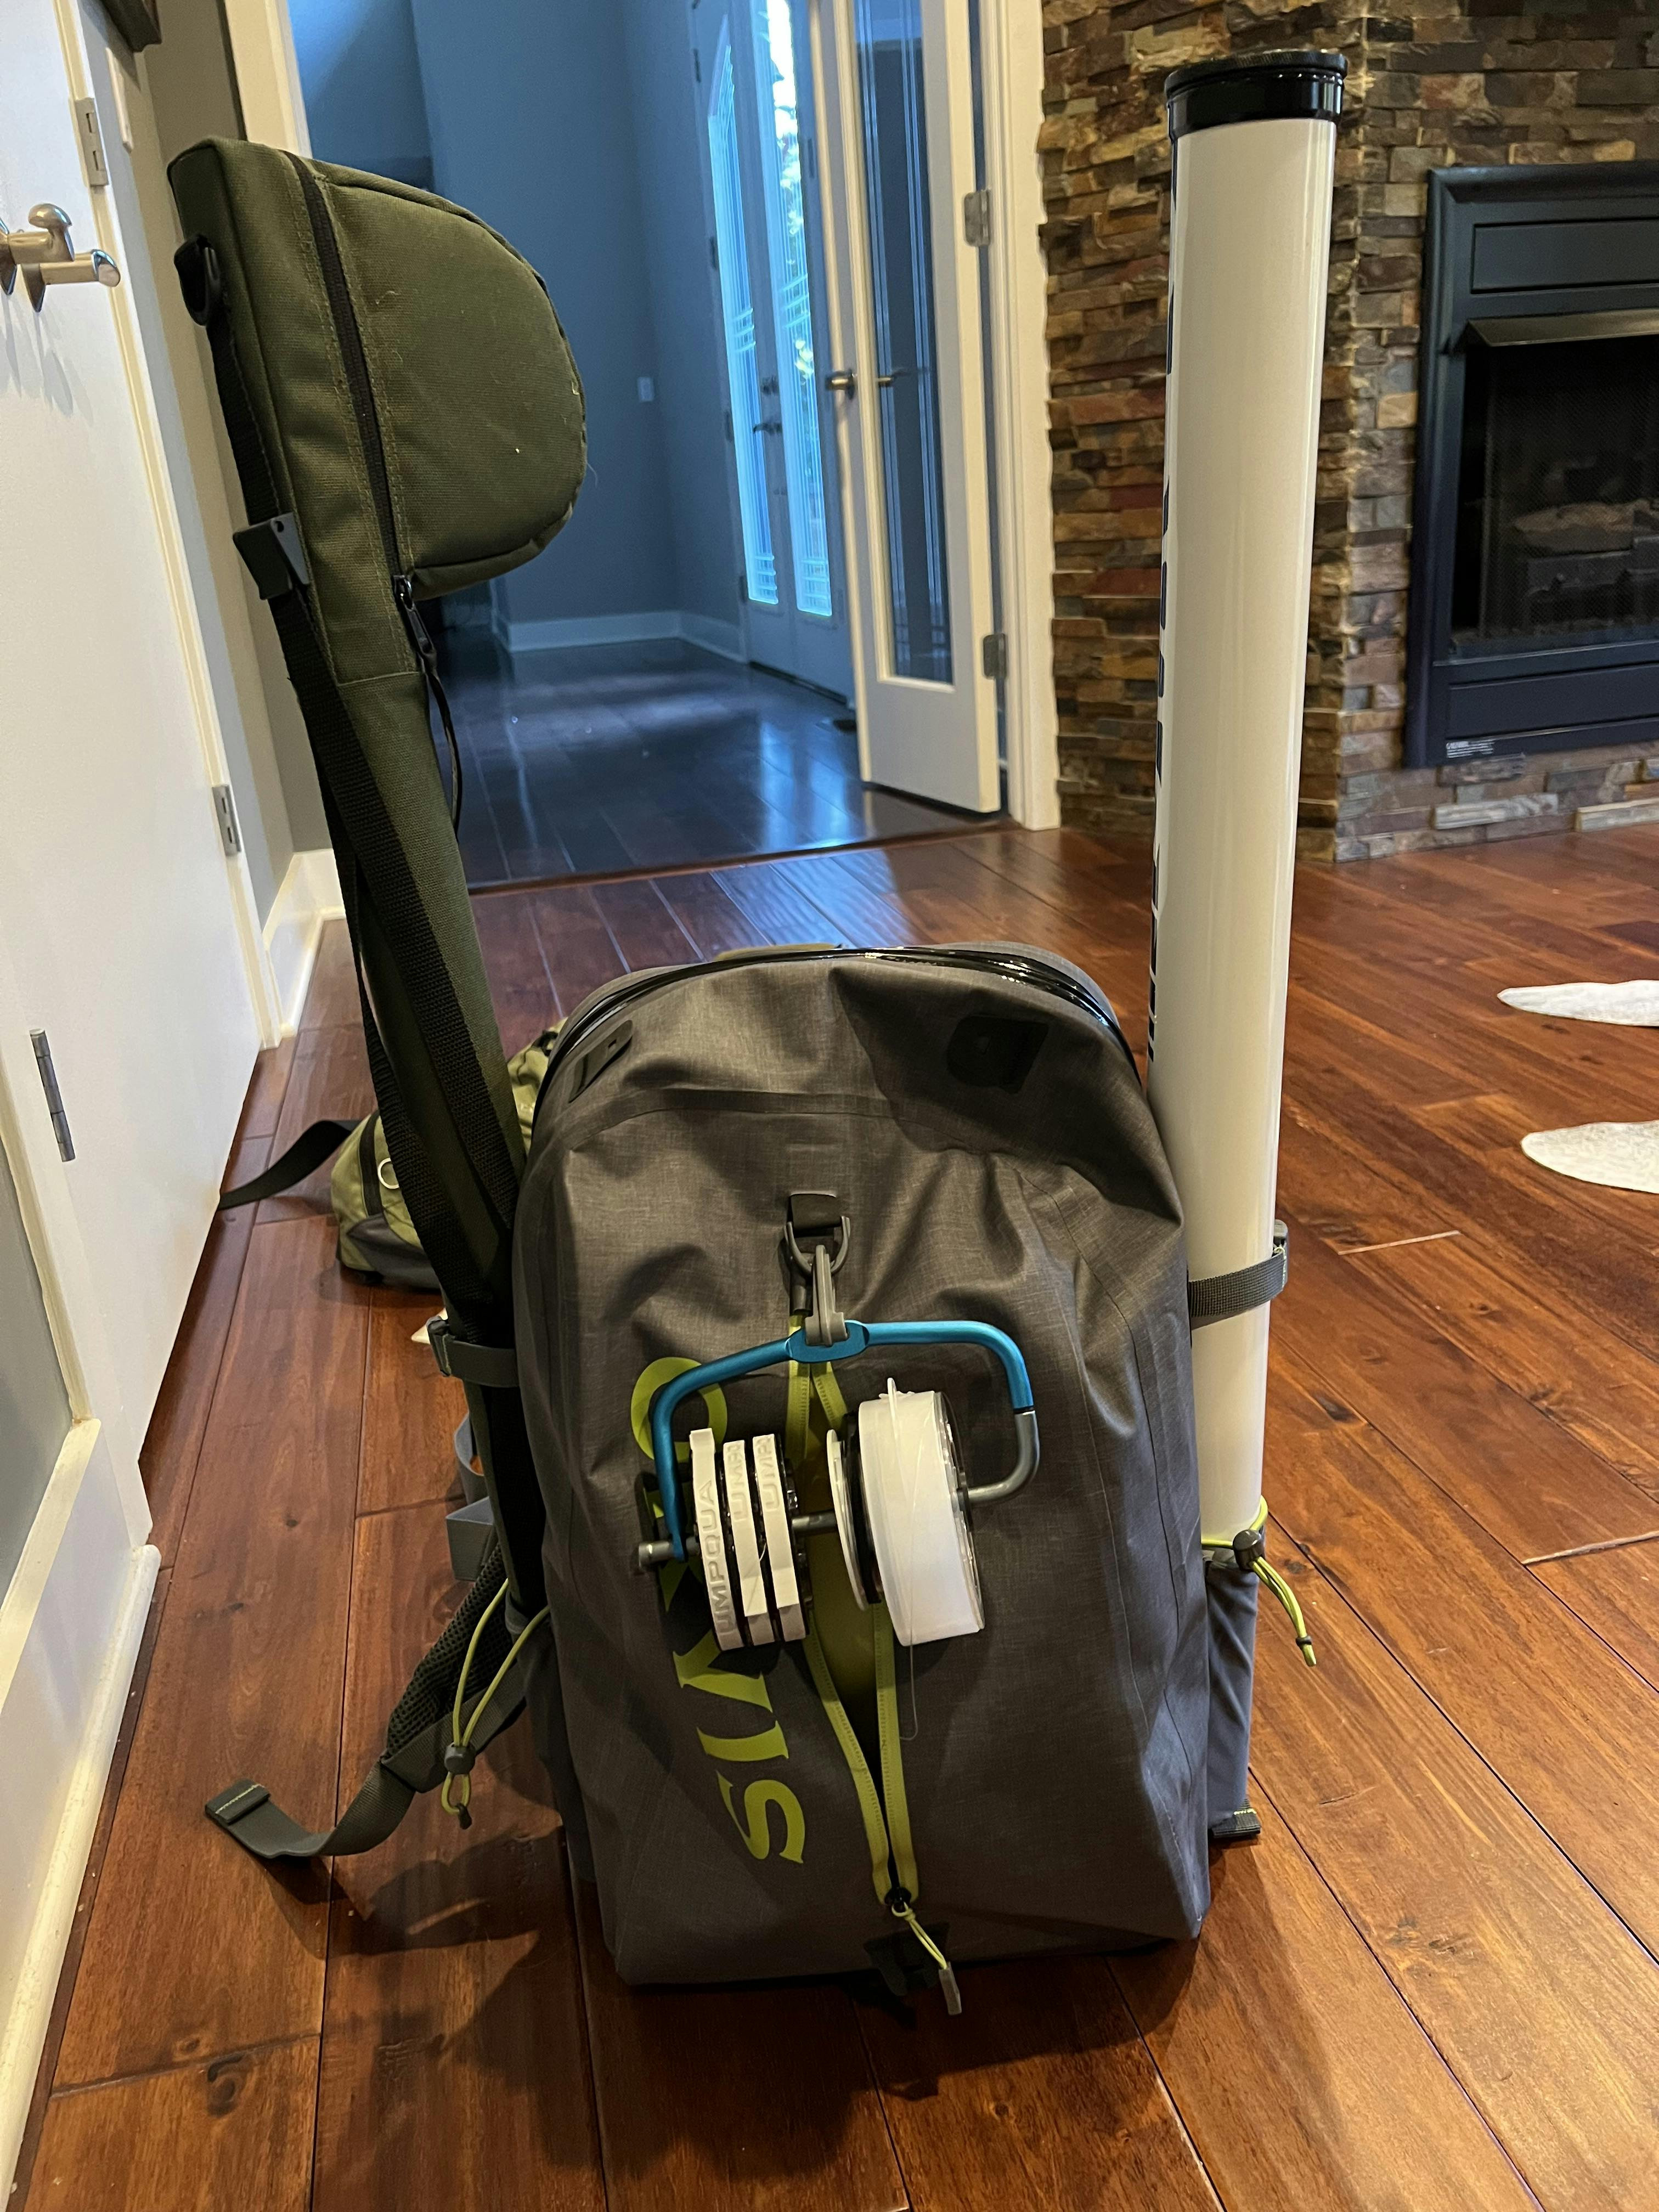 Expert Review: Orvis Waterproof Backpack